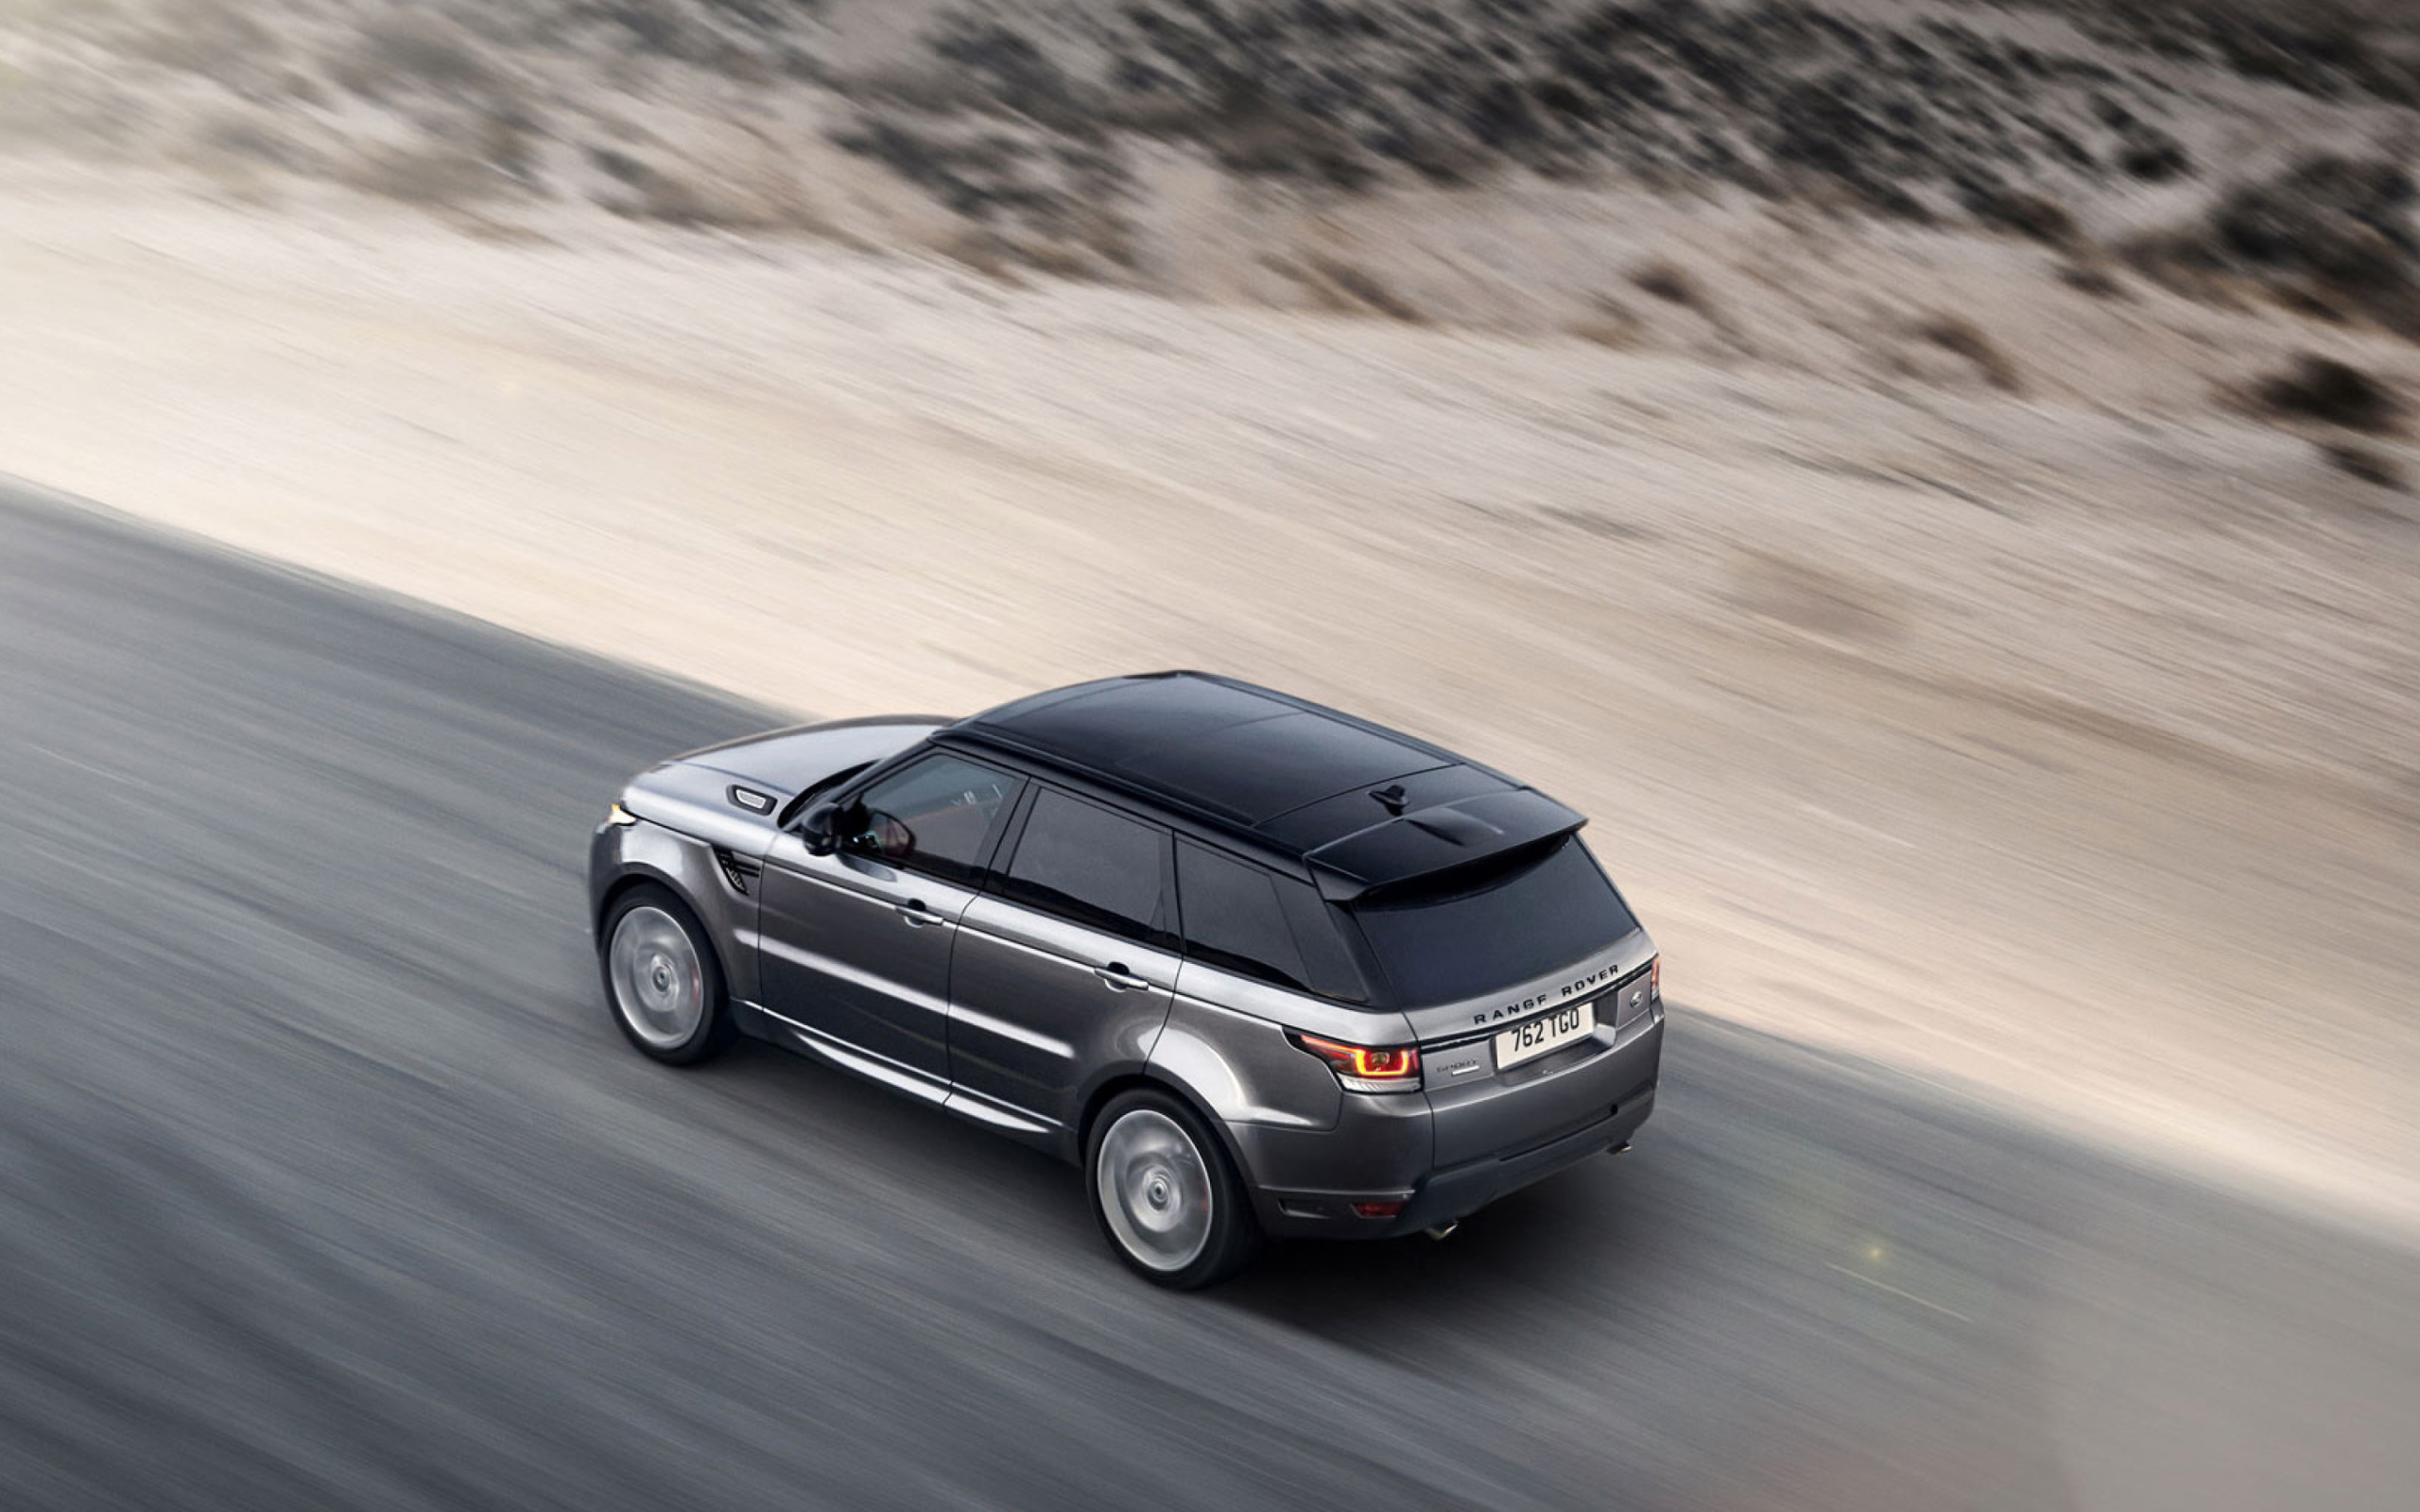 Das Land Rover Range Rover Wallpaper 2560x1600